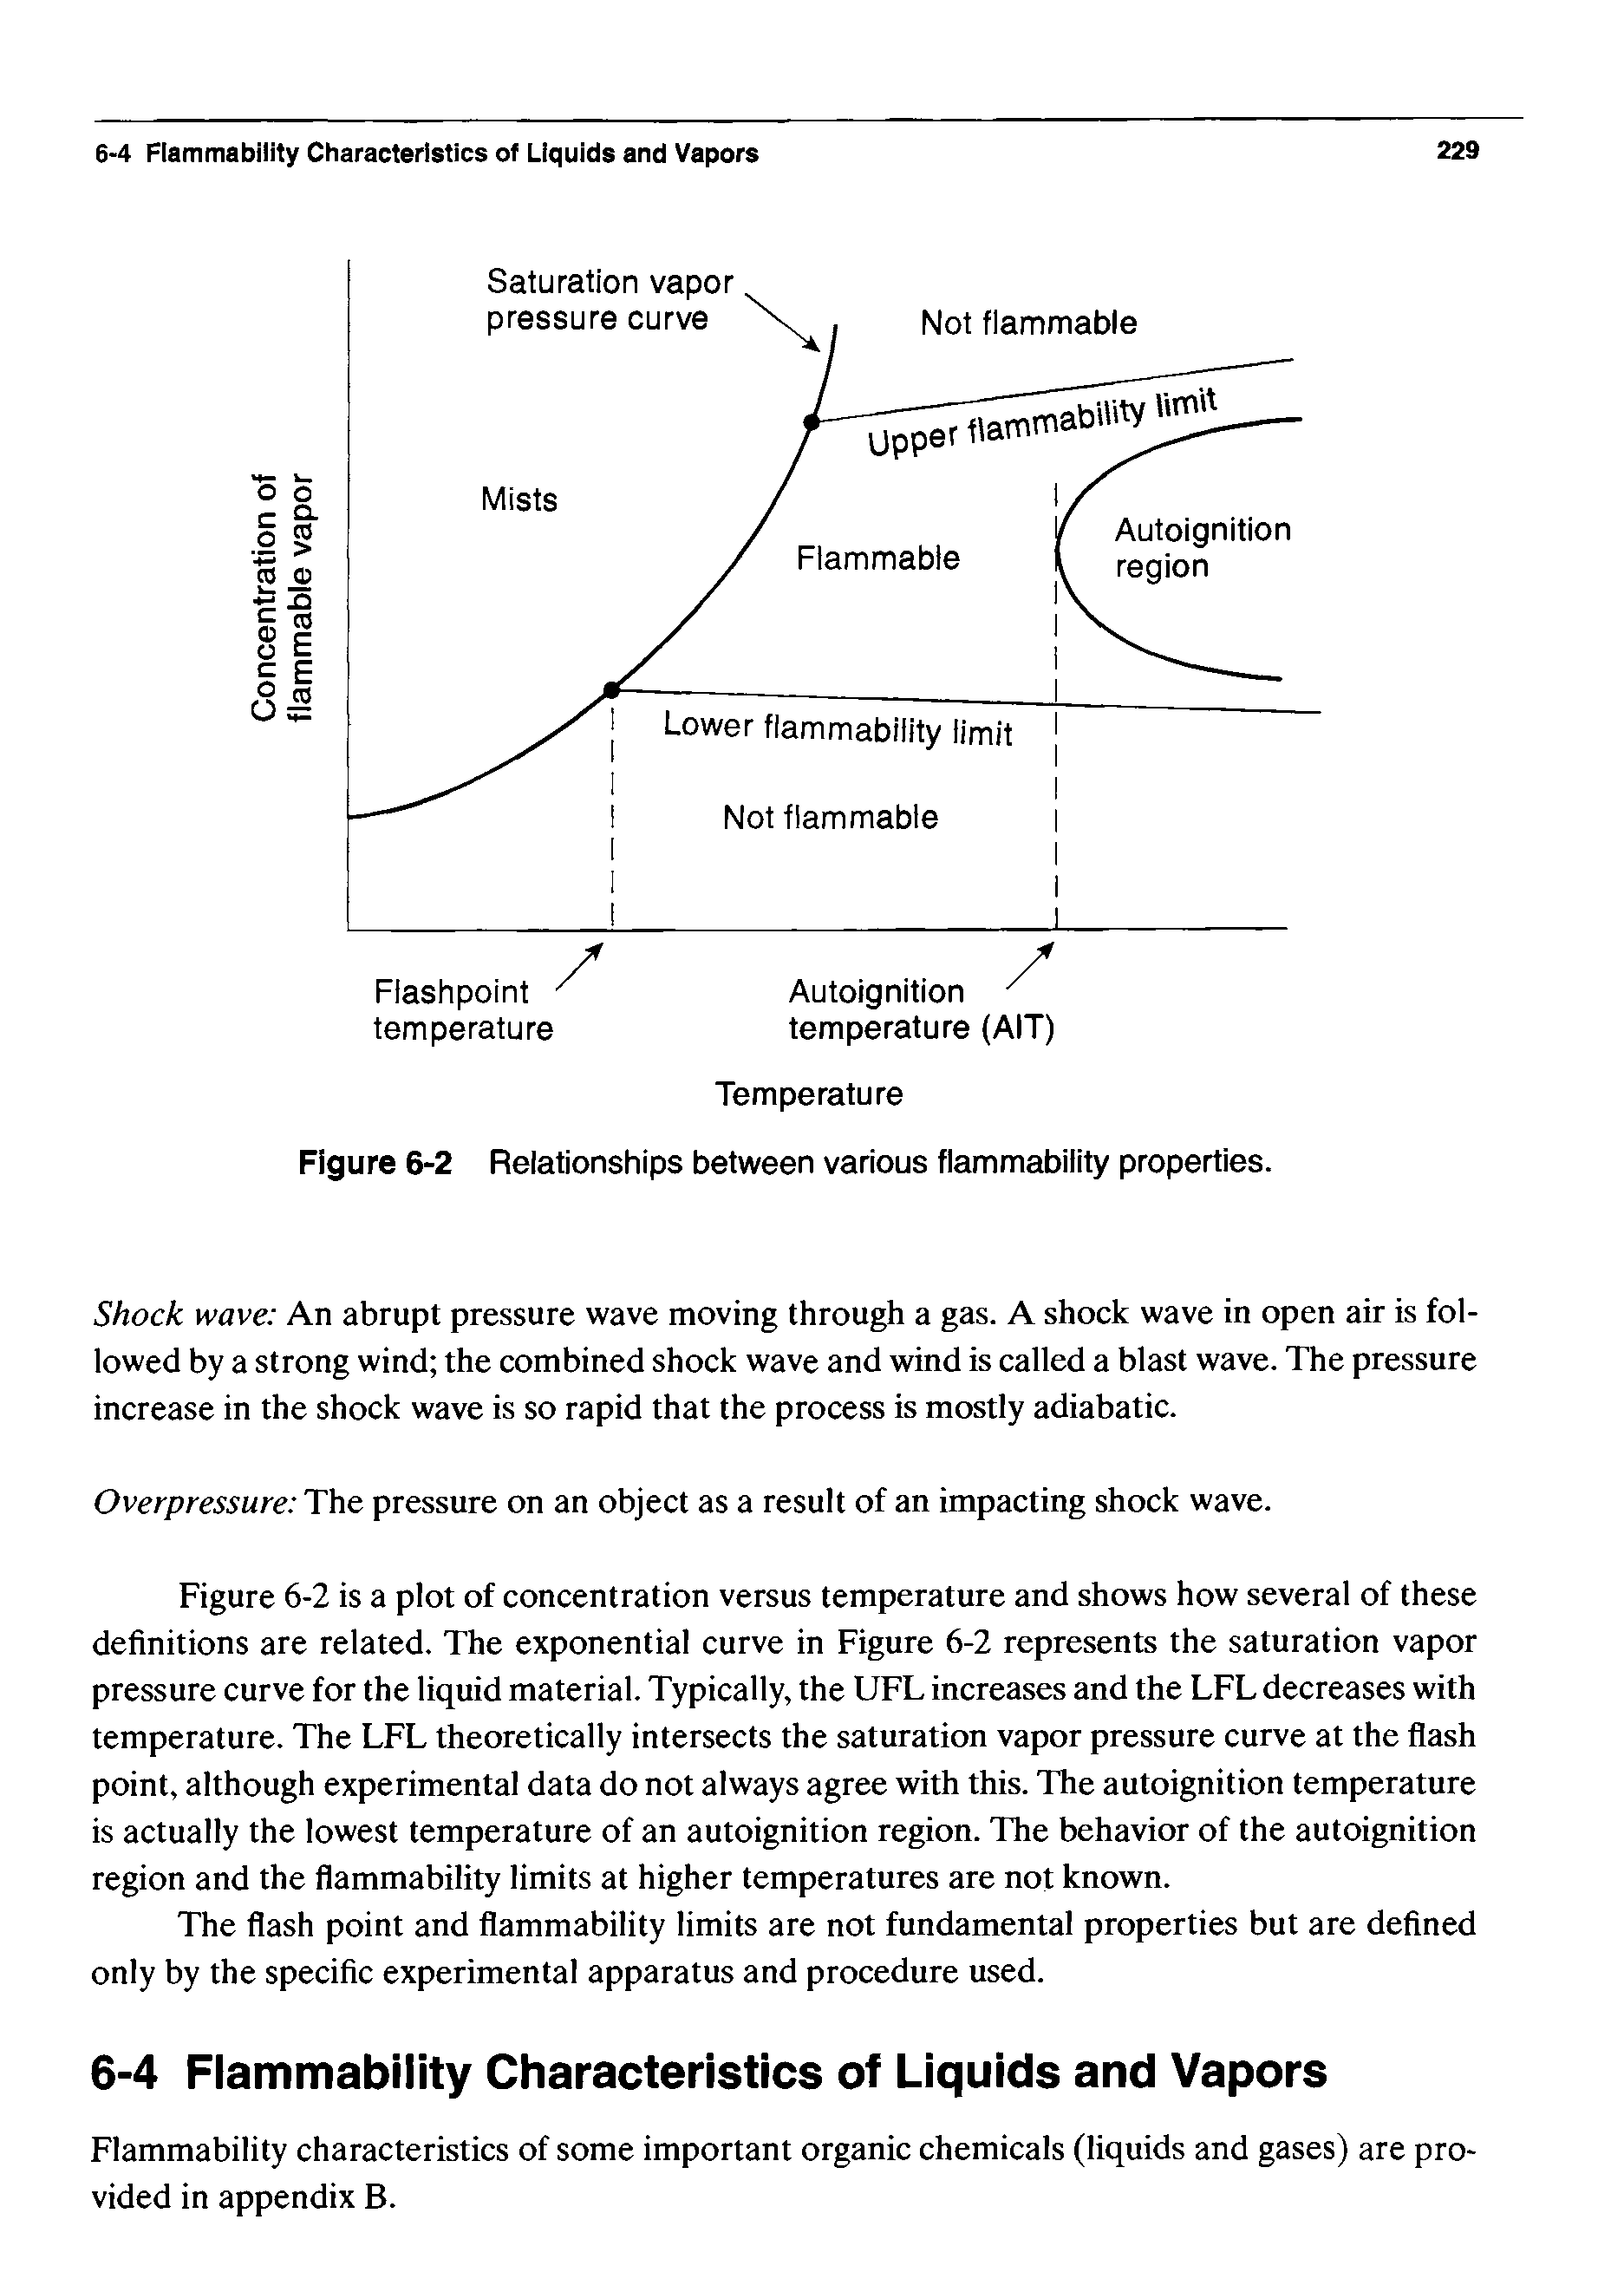 Figure 6-2 Relationships between various flammability properties.